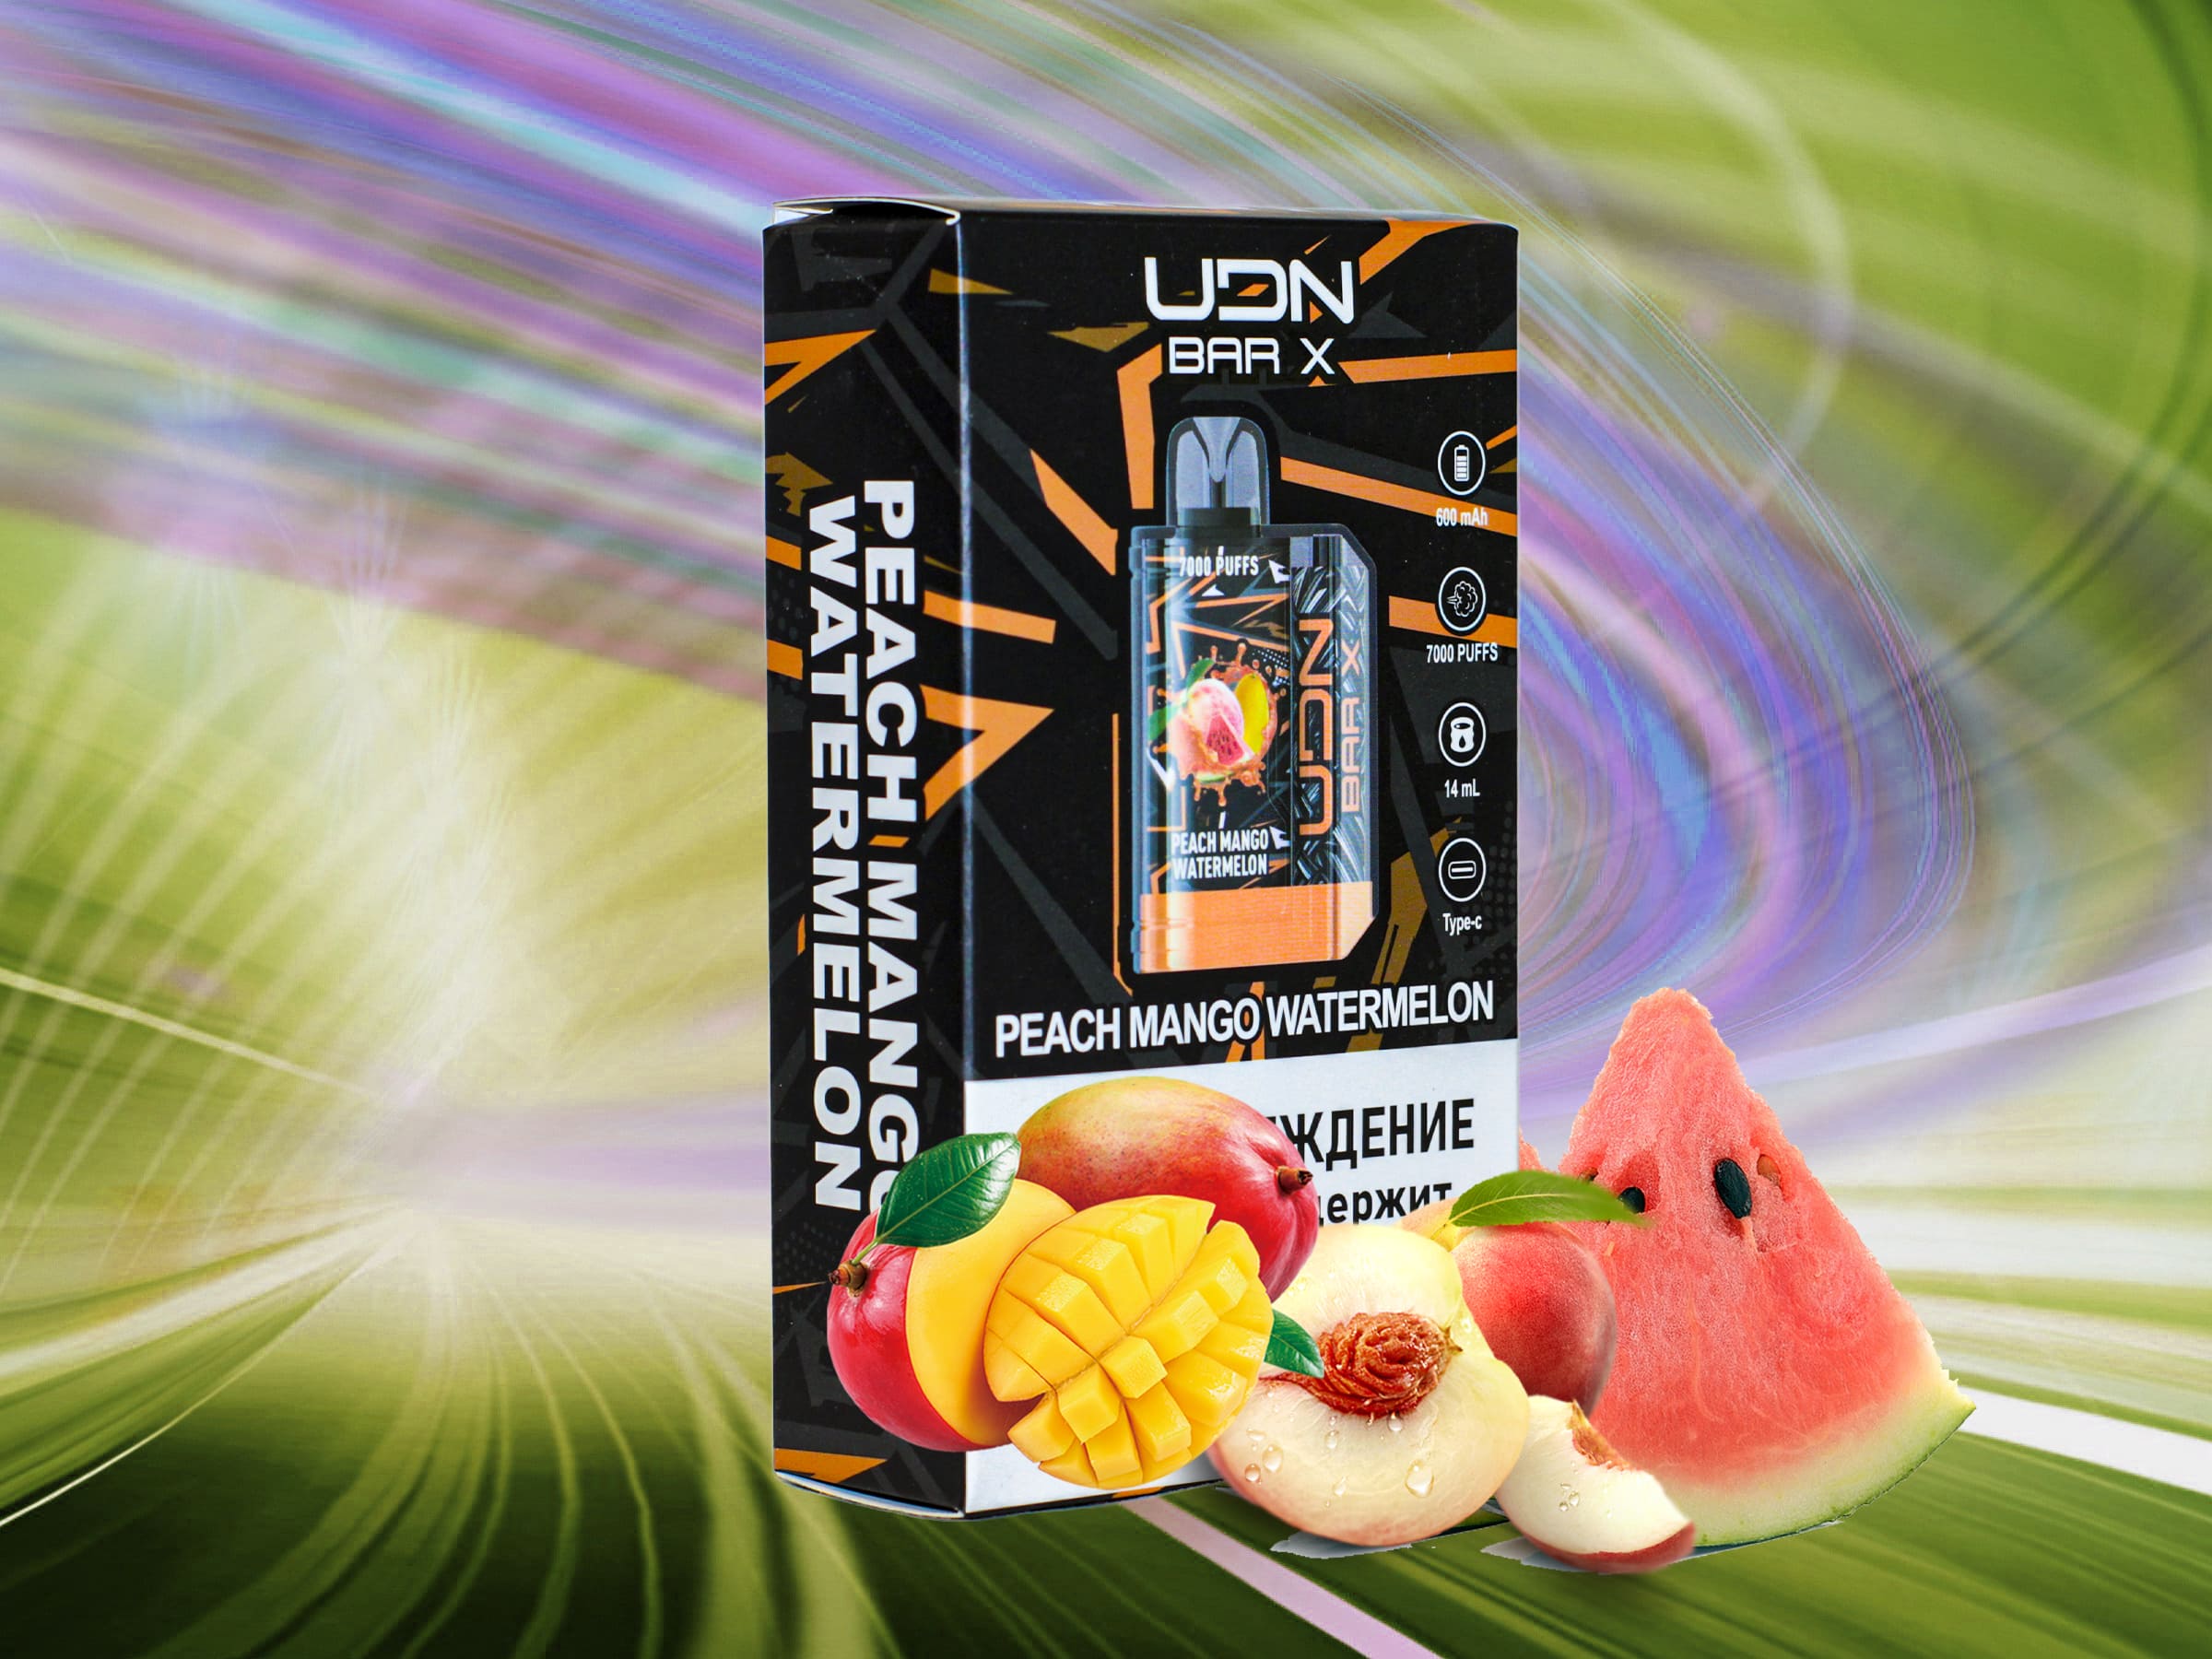 UDN X V3 7000 / Peach Mango Watermelon